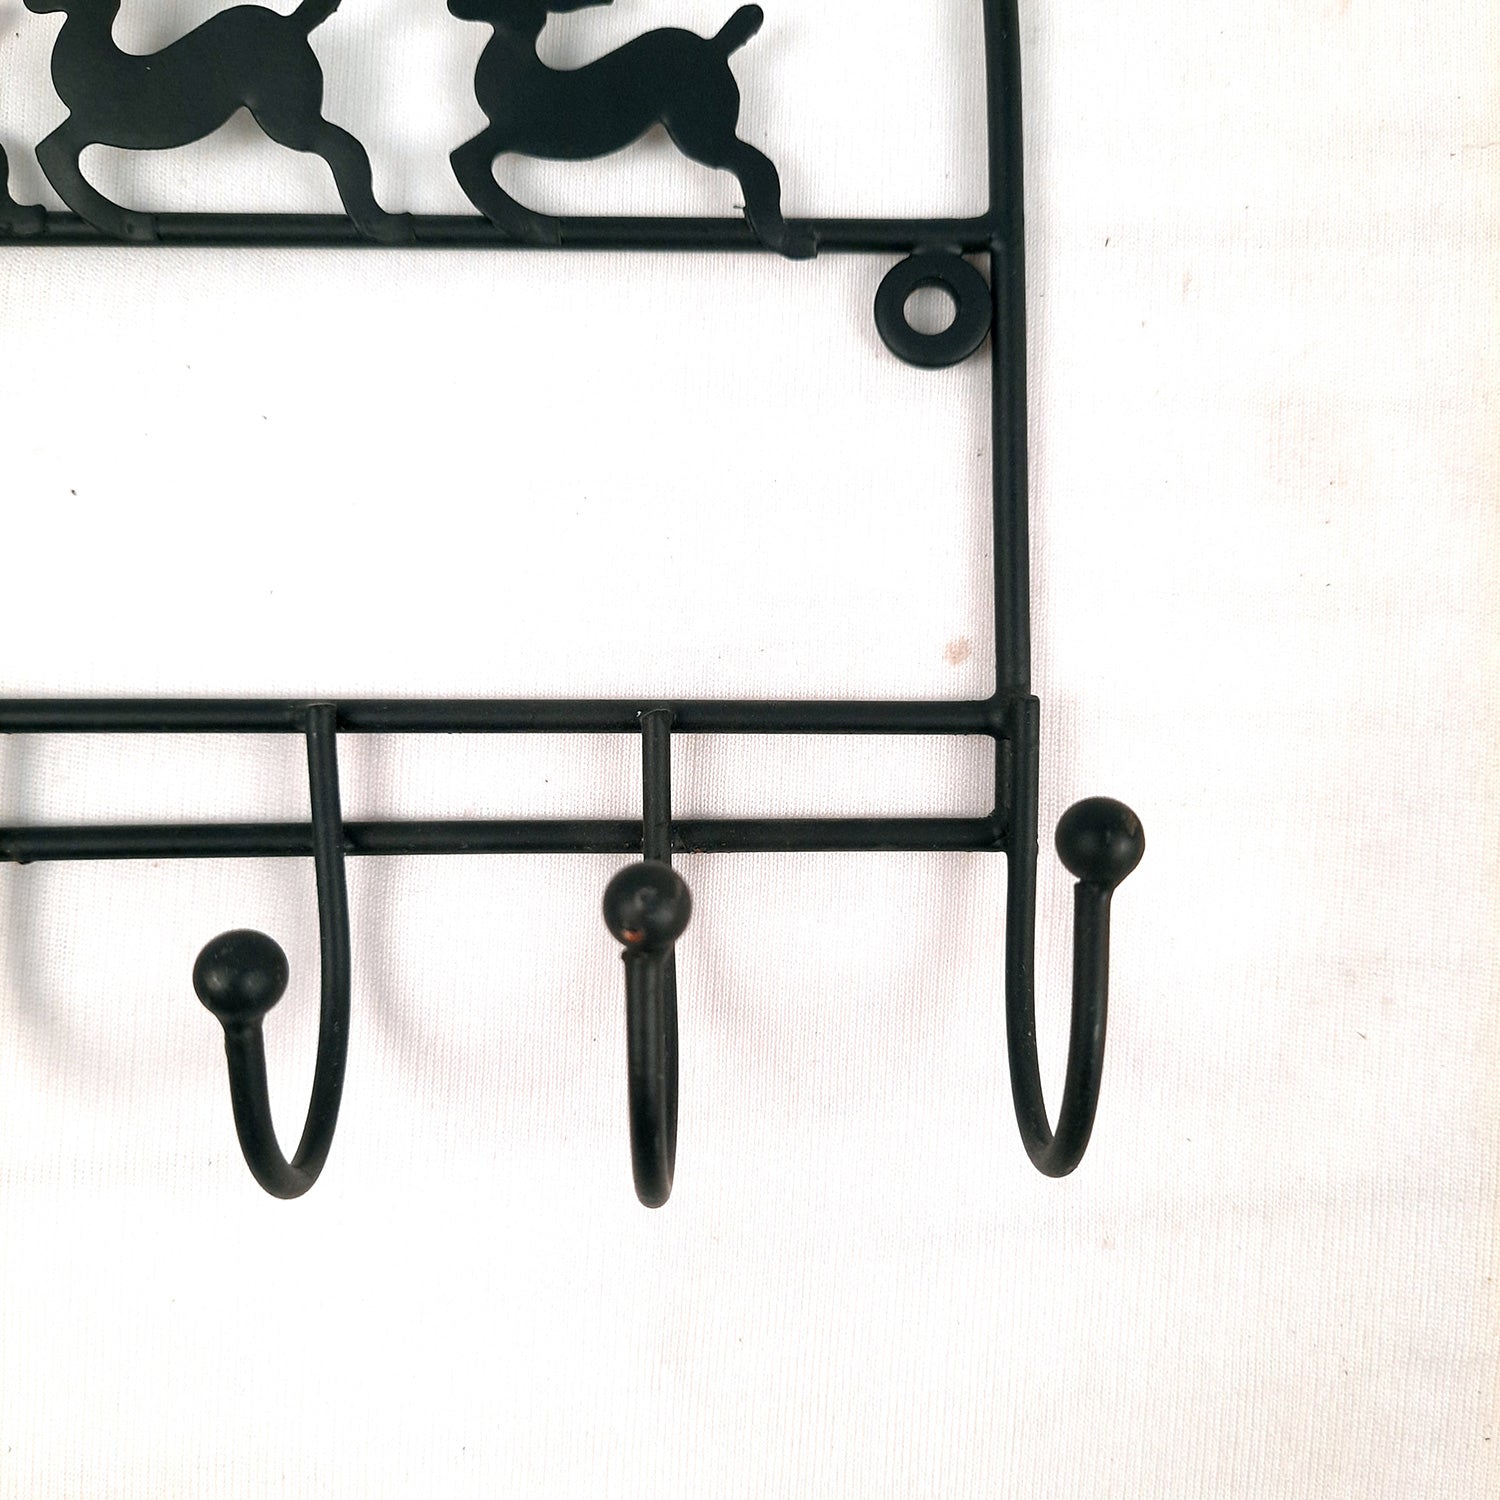 Key Holder Stands | Keys Hook Wall Hangers - Reindeer Design | Keys Organizer - For Home, Entrance, Office Decor & Gifts - 9 Inch (5 Hooks) - Apkamart #Style_Pack of 4